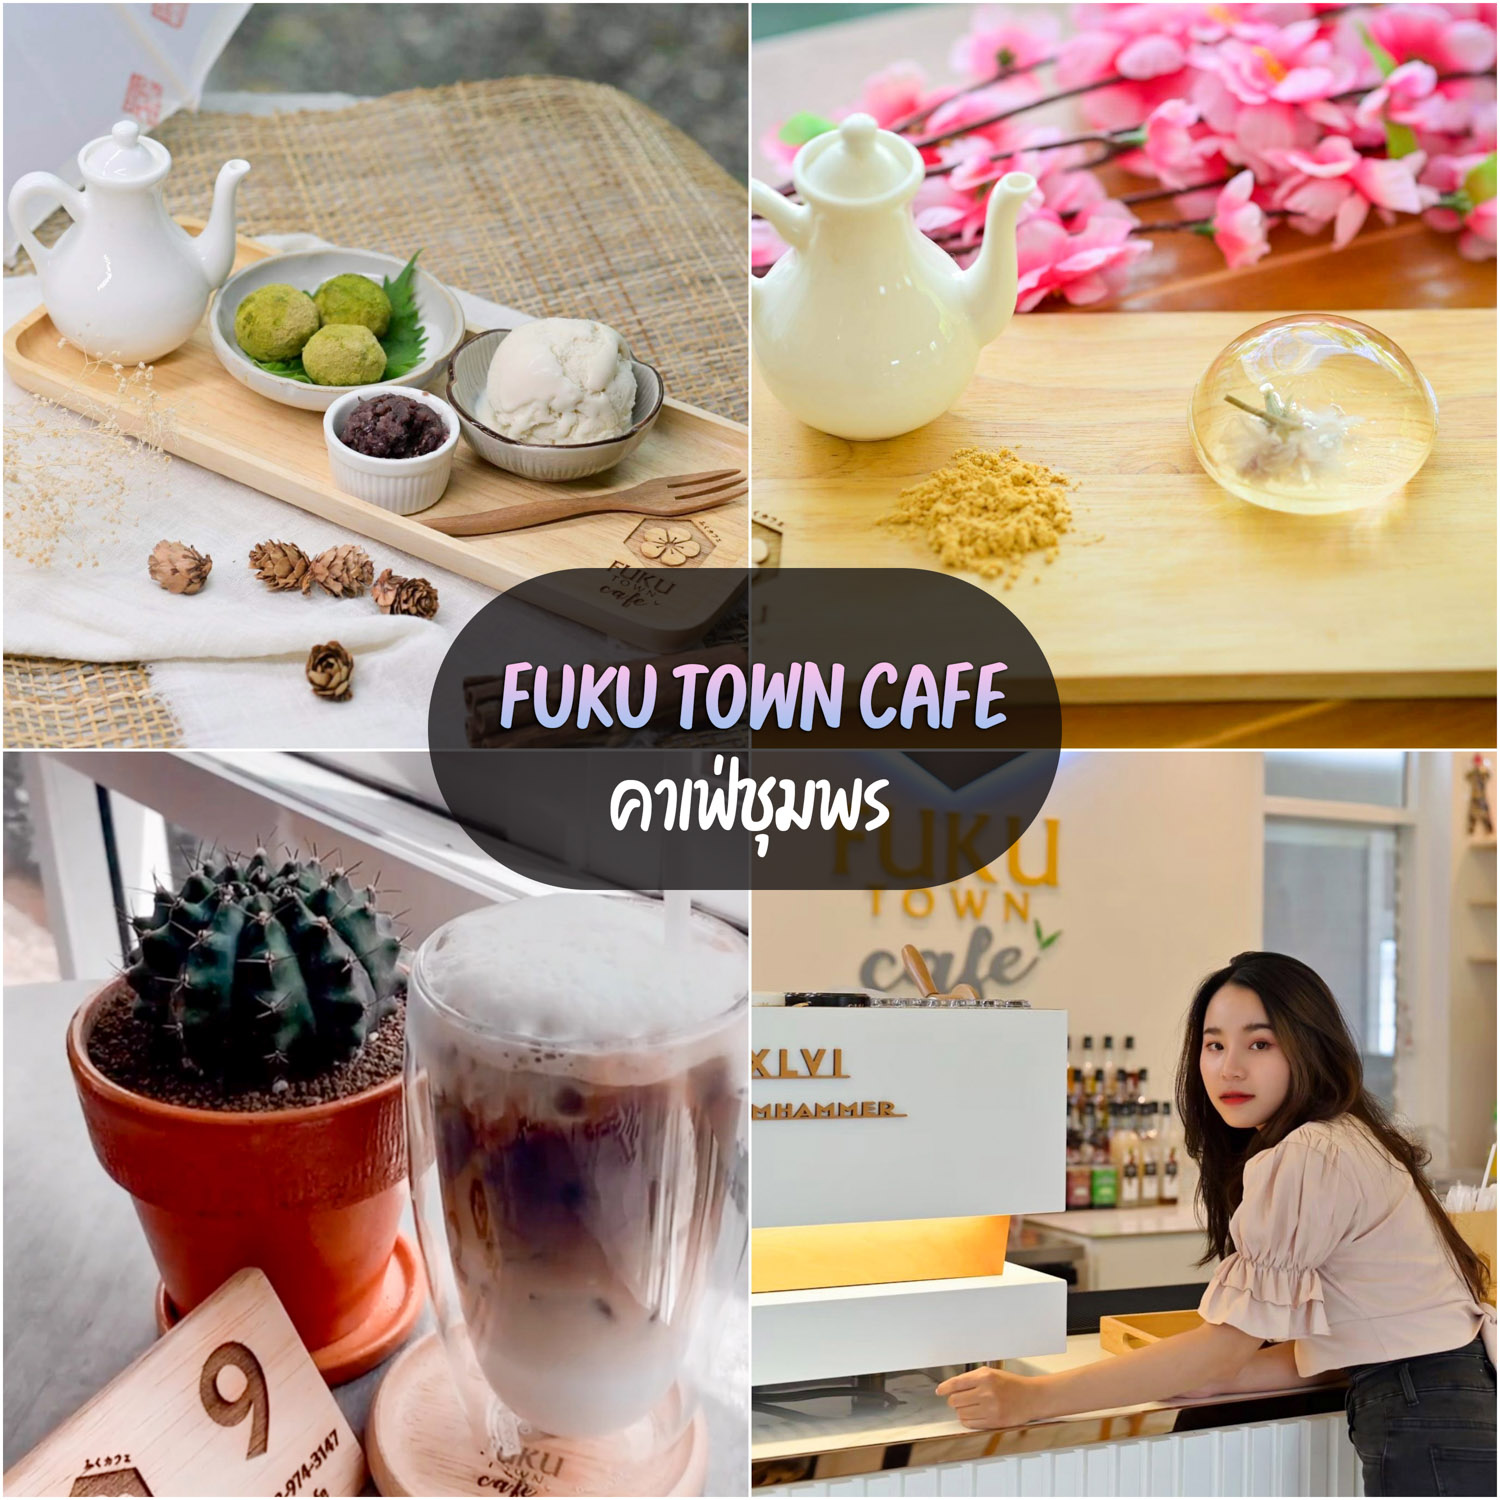 FUKU Town Cafe คาเฟ่ชุมพรเมืองแห่งขนมหวาน ของเค้าดีย์เว่อออ เค้กเบเกอรี่อร่อย